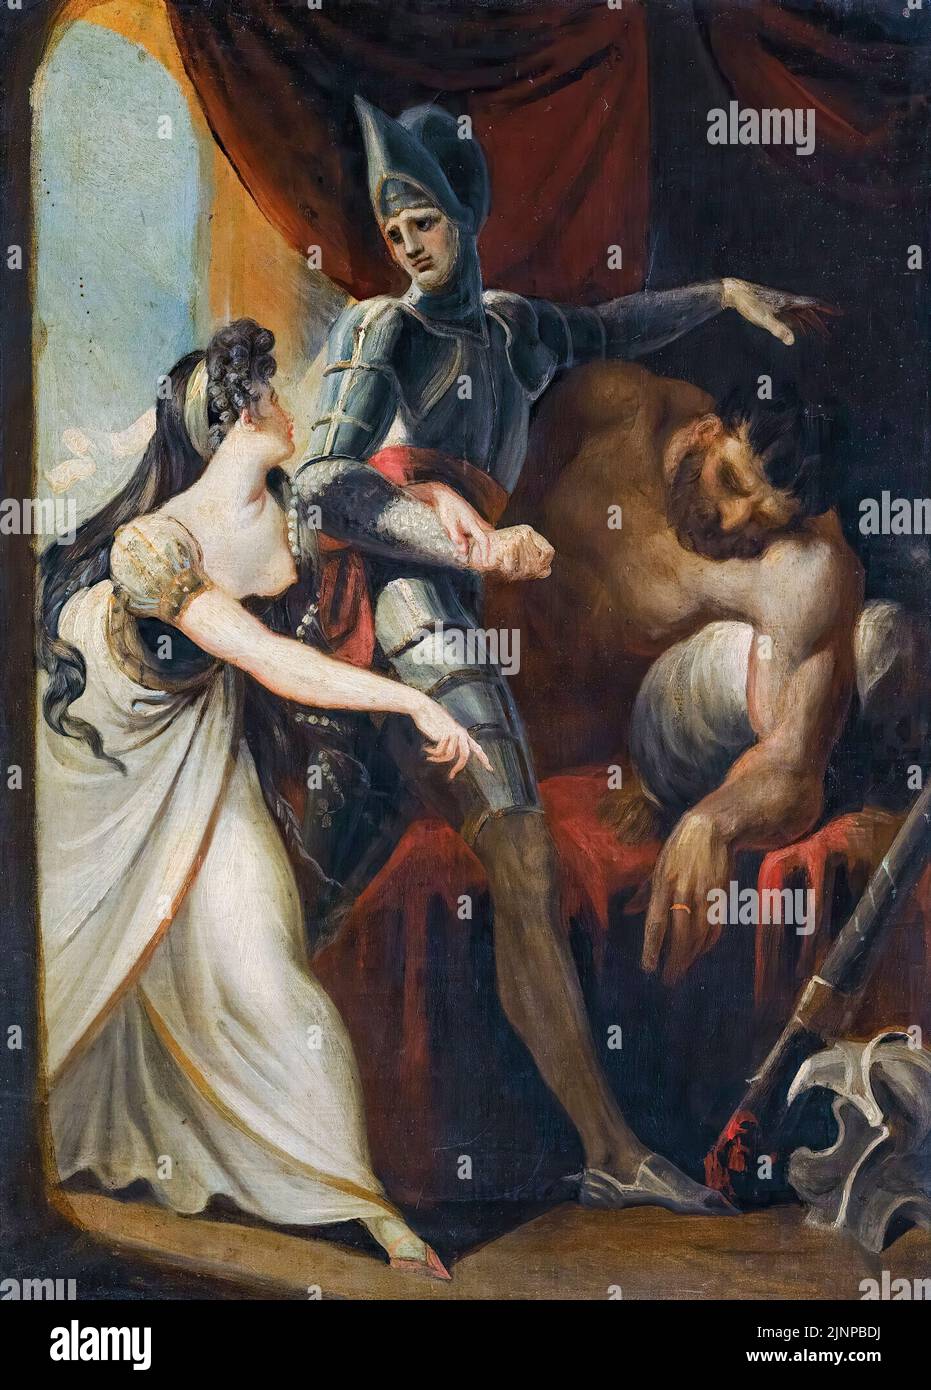 Henry Fuseli, Hüon sauvant Angela, du géant Angulaffer, de, Oberon de Wieland, peinture à l'huile sur toile, avant 1825 Banque D'Images